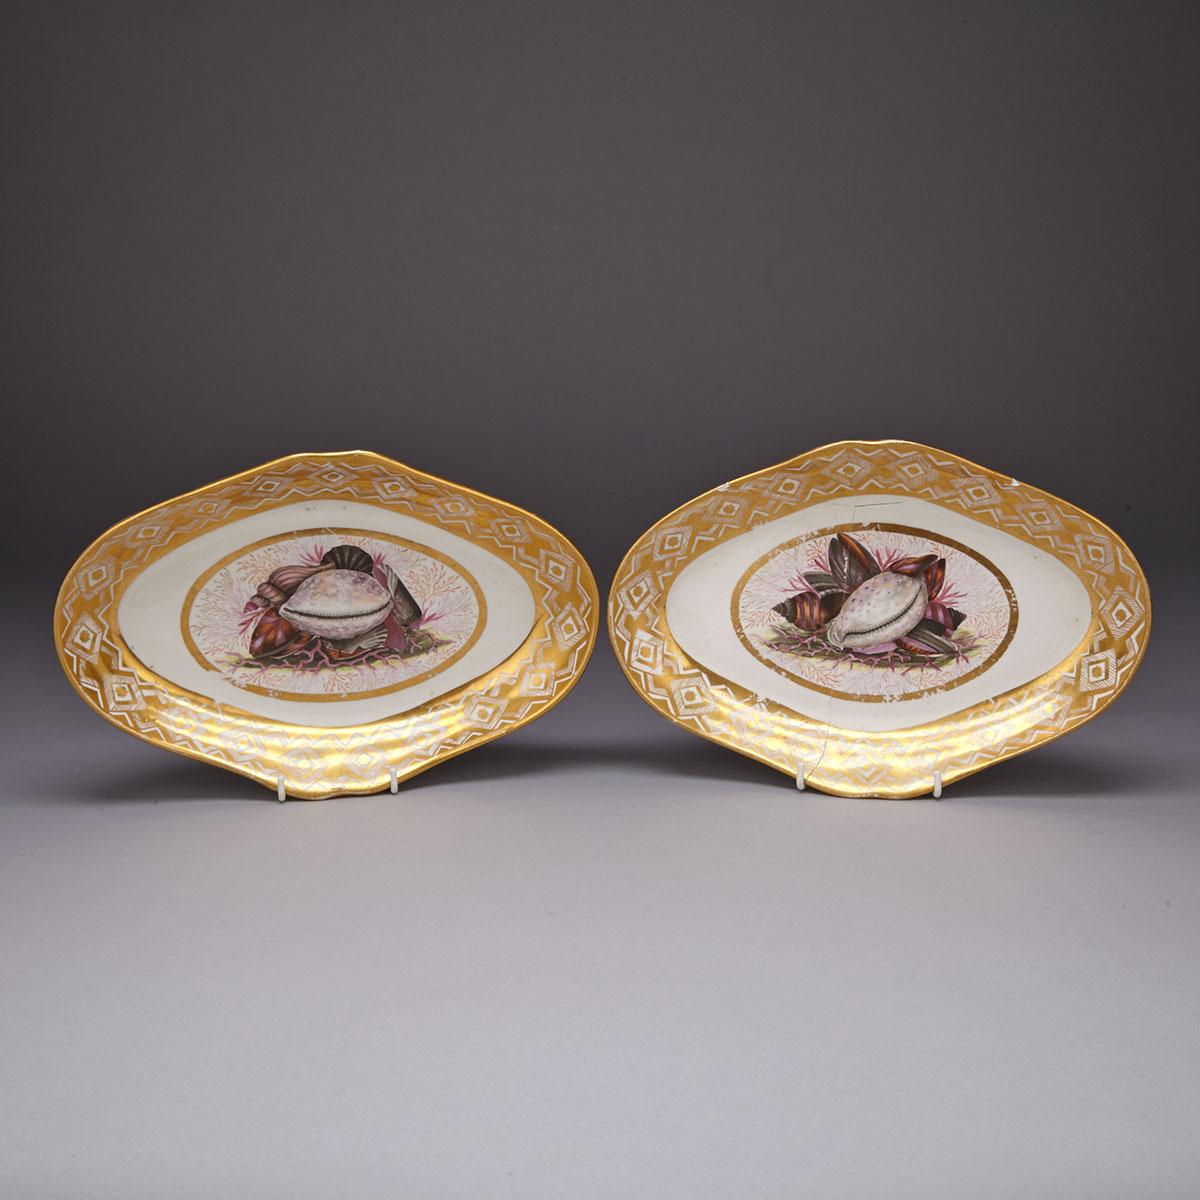 Pair of Coalport Oval Dessert Dishes, c.1815